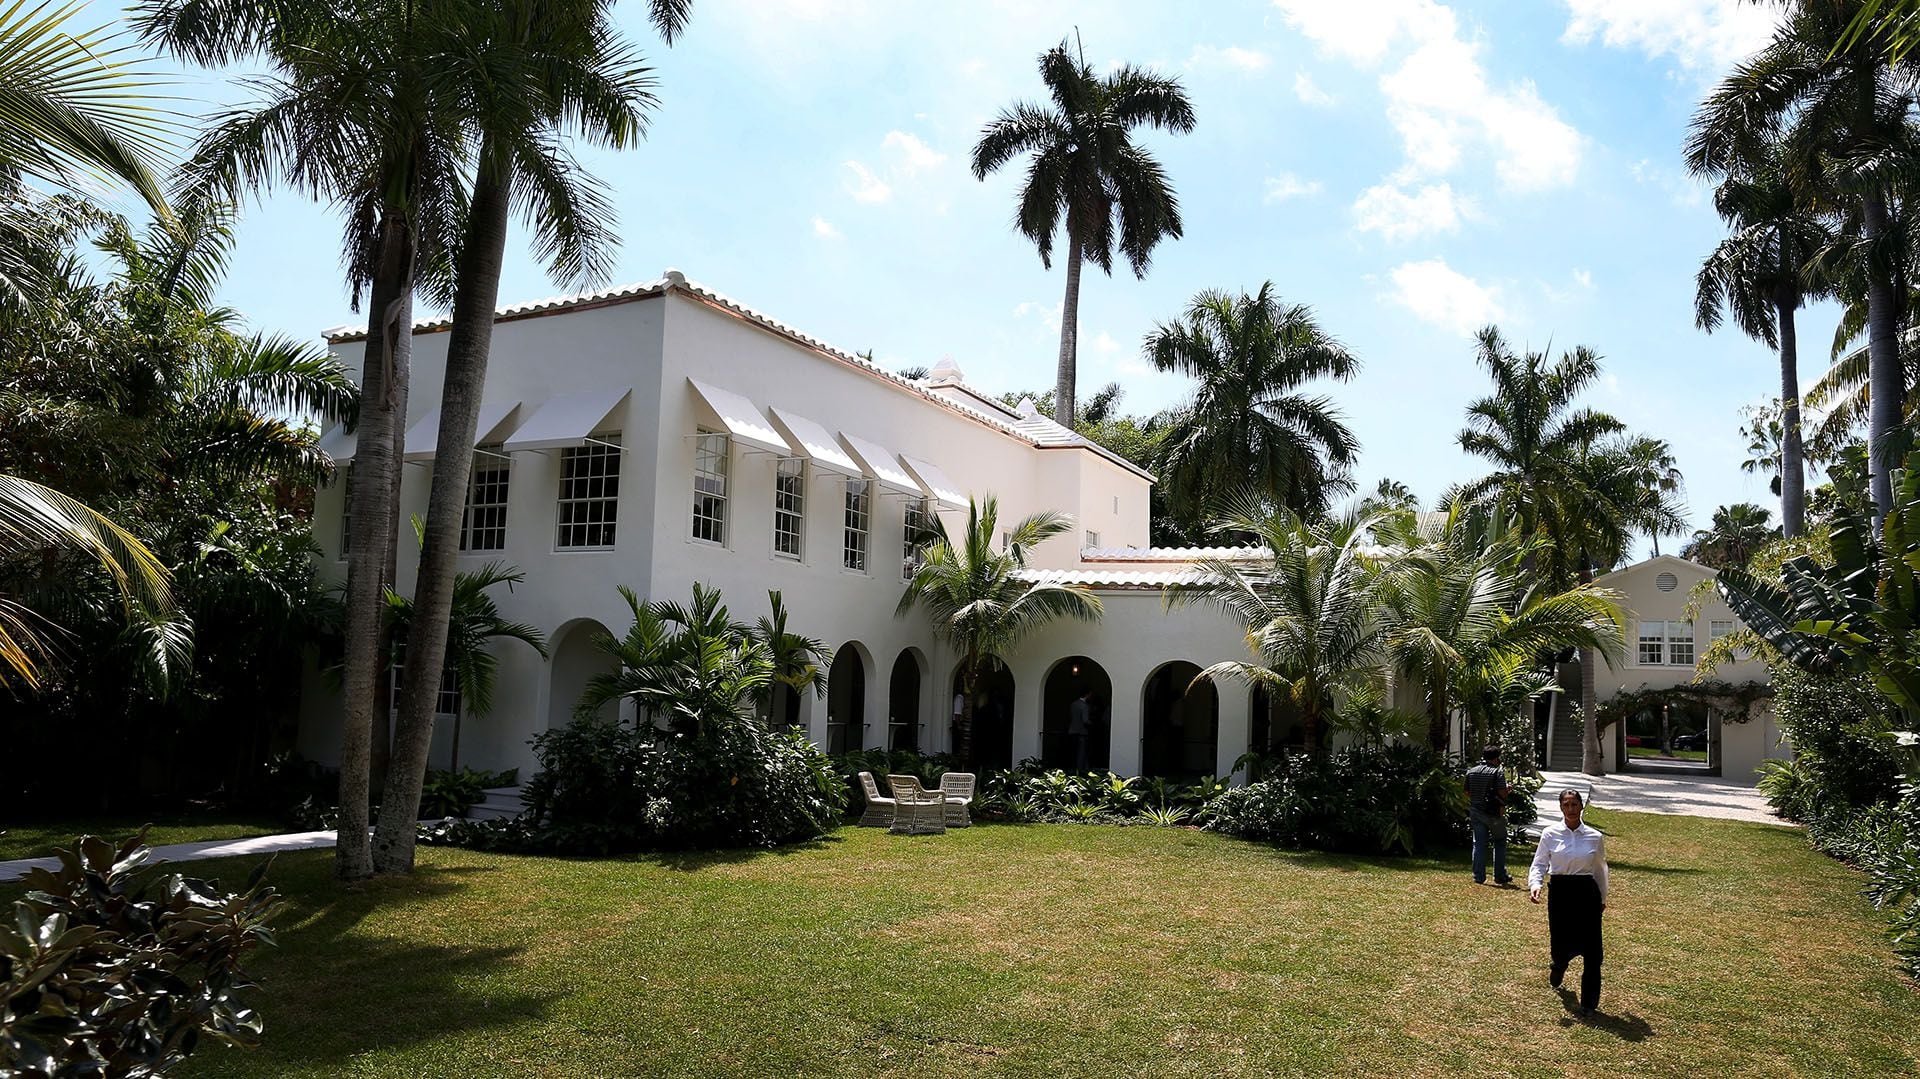 La antigua casa de Al Capone se ve durante un recorrido por la casa histórica el 18 de marzo de 2015 en Miami Beach, Florida.  (Foto de Joe Raedle/Getty Images)